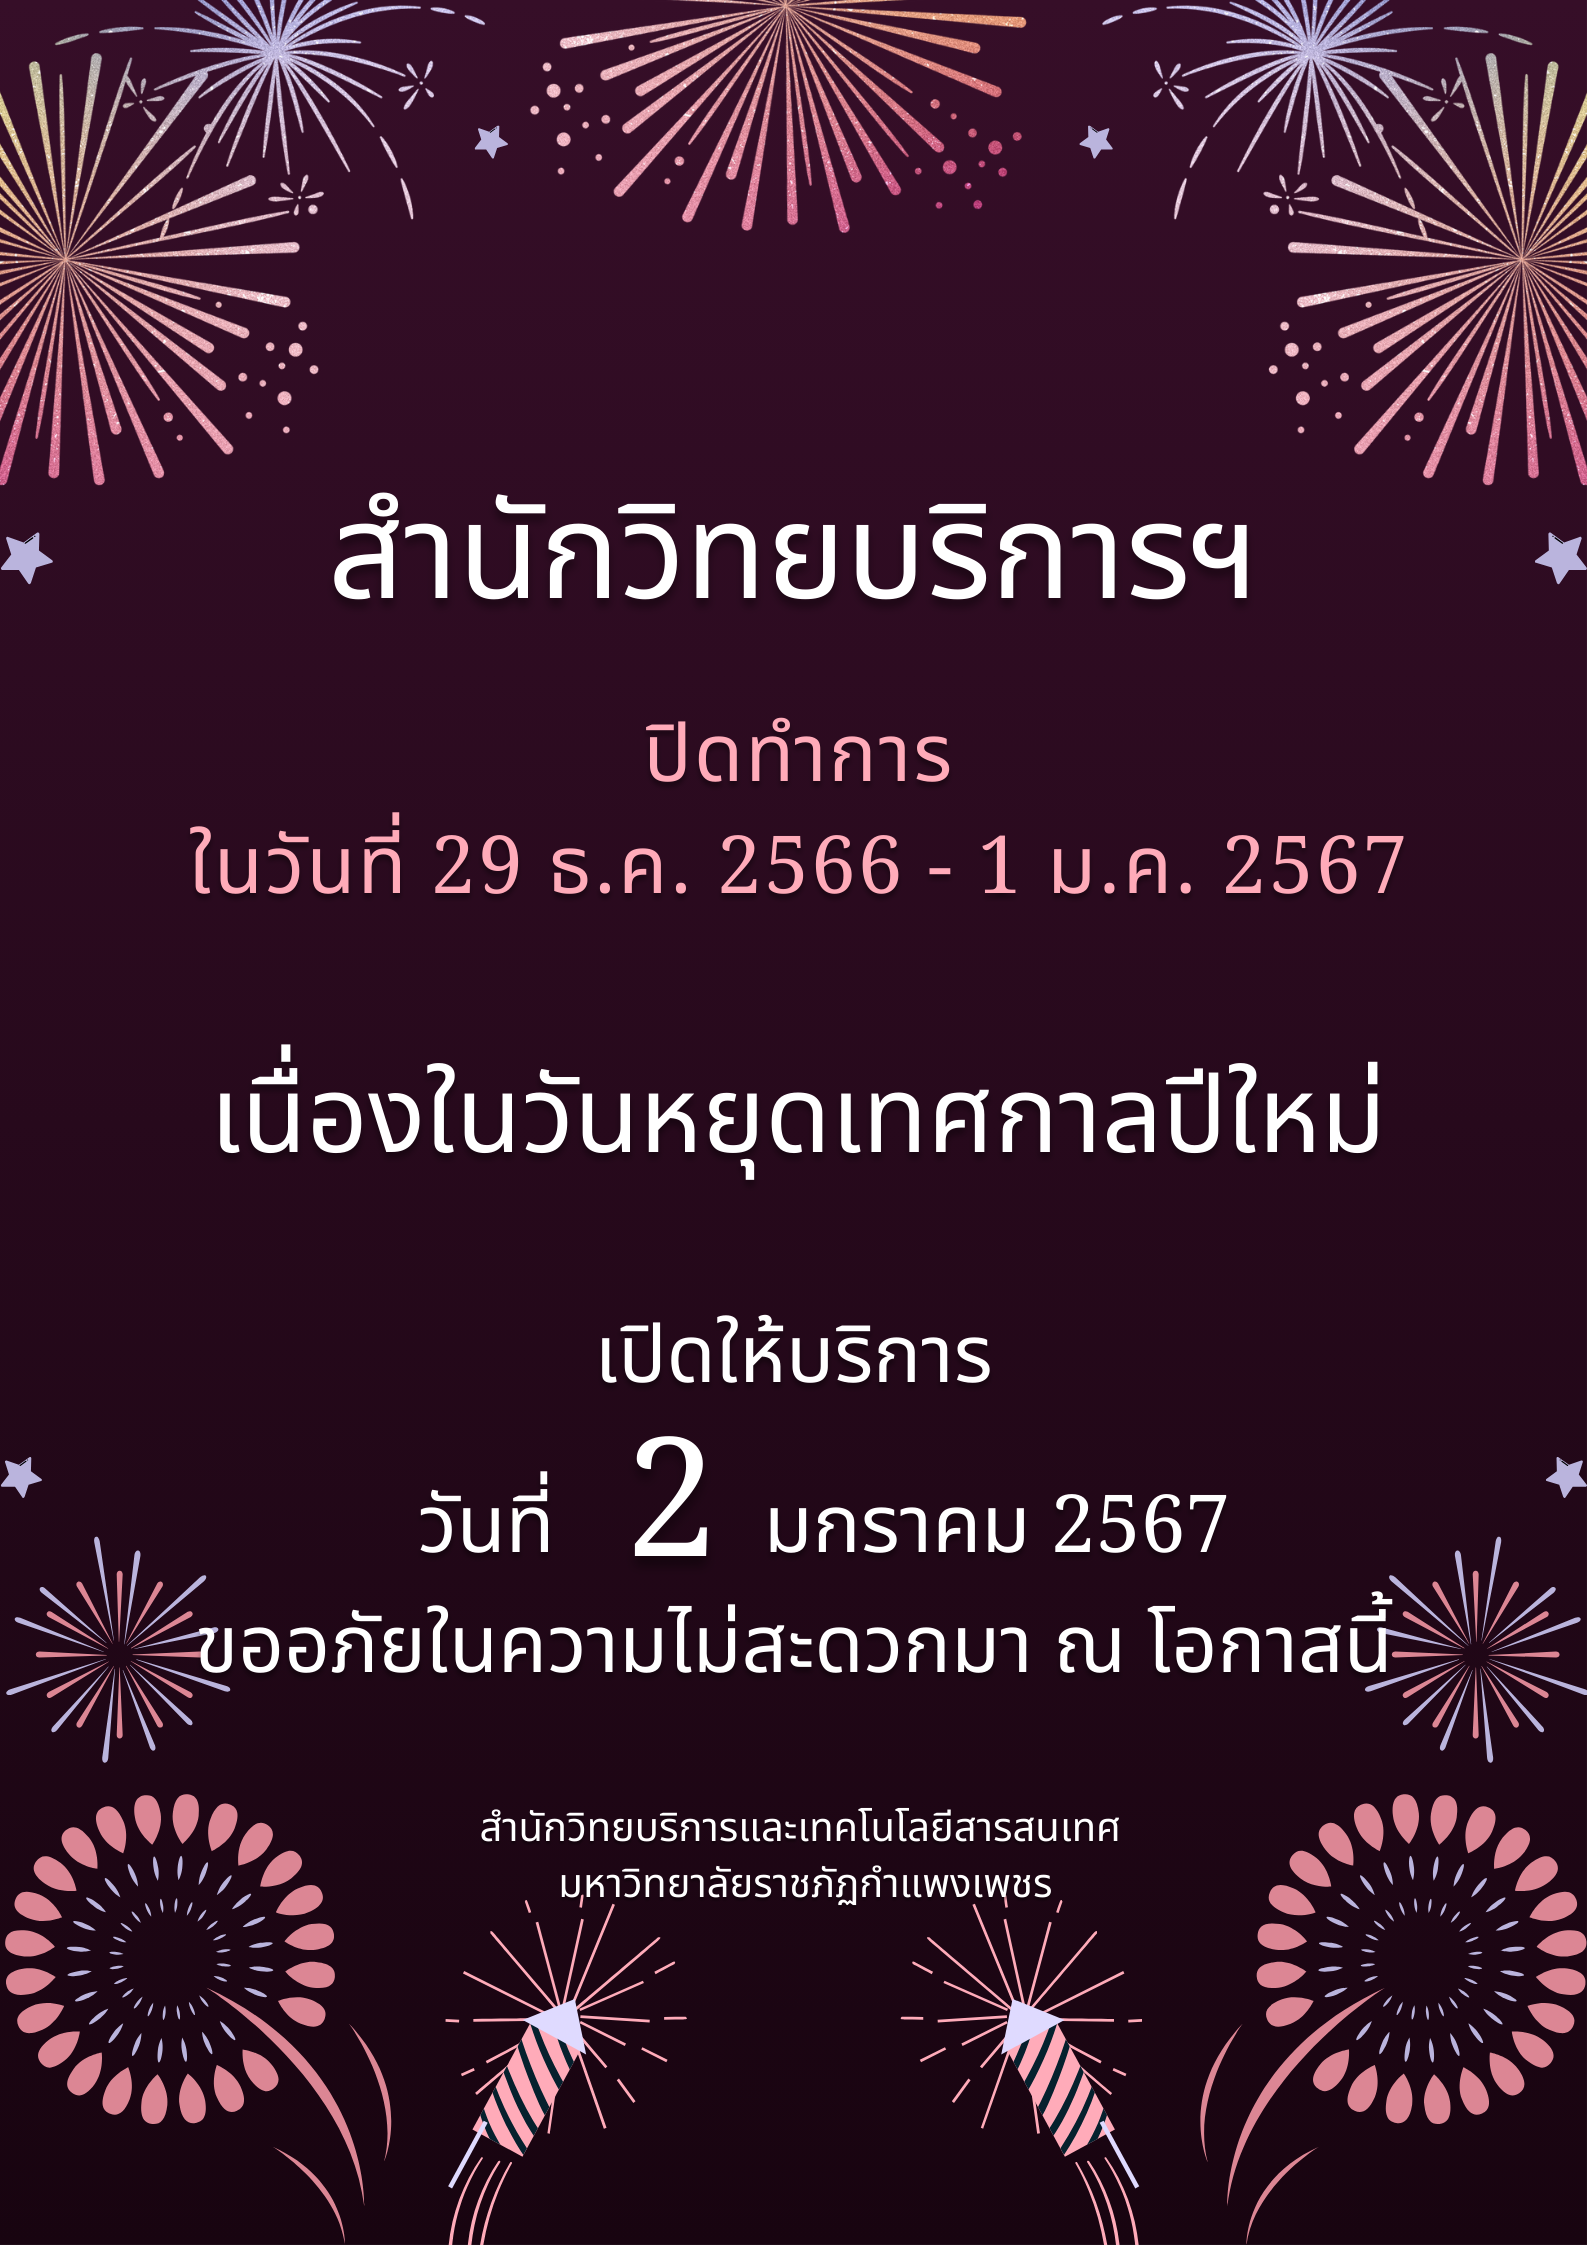 ประกาศปิดวันหยุดเทศกาลปีใหม่ 2567